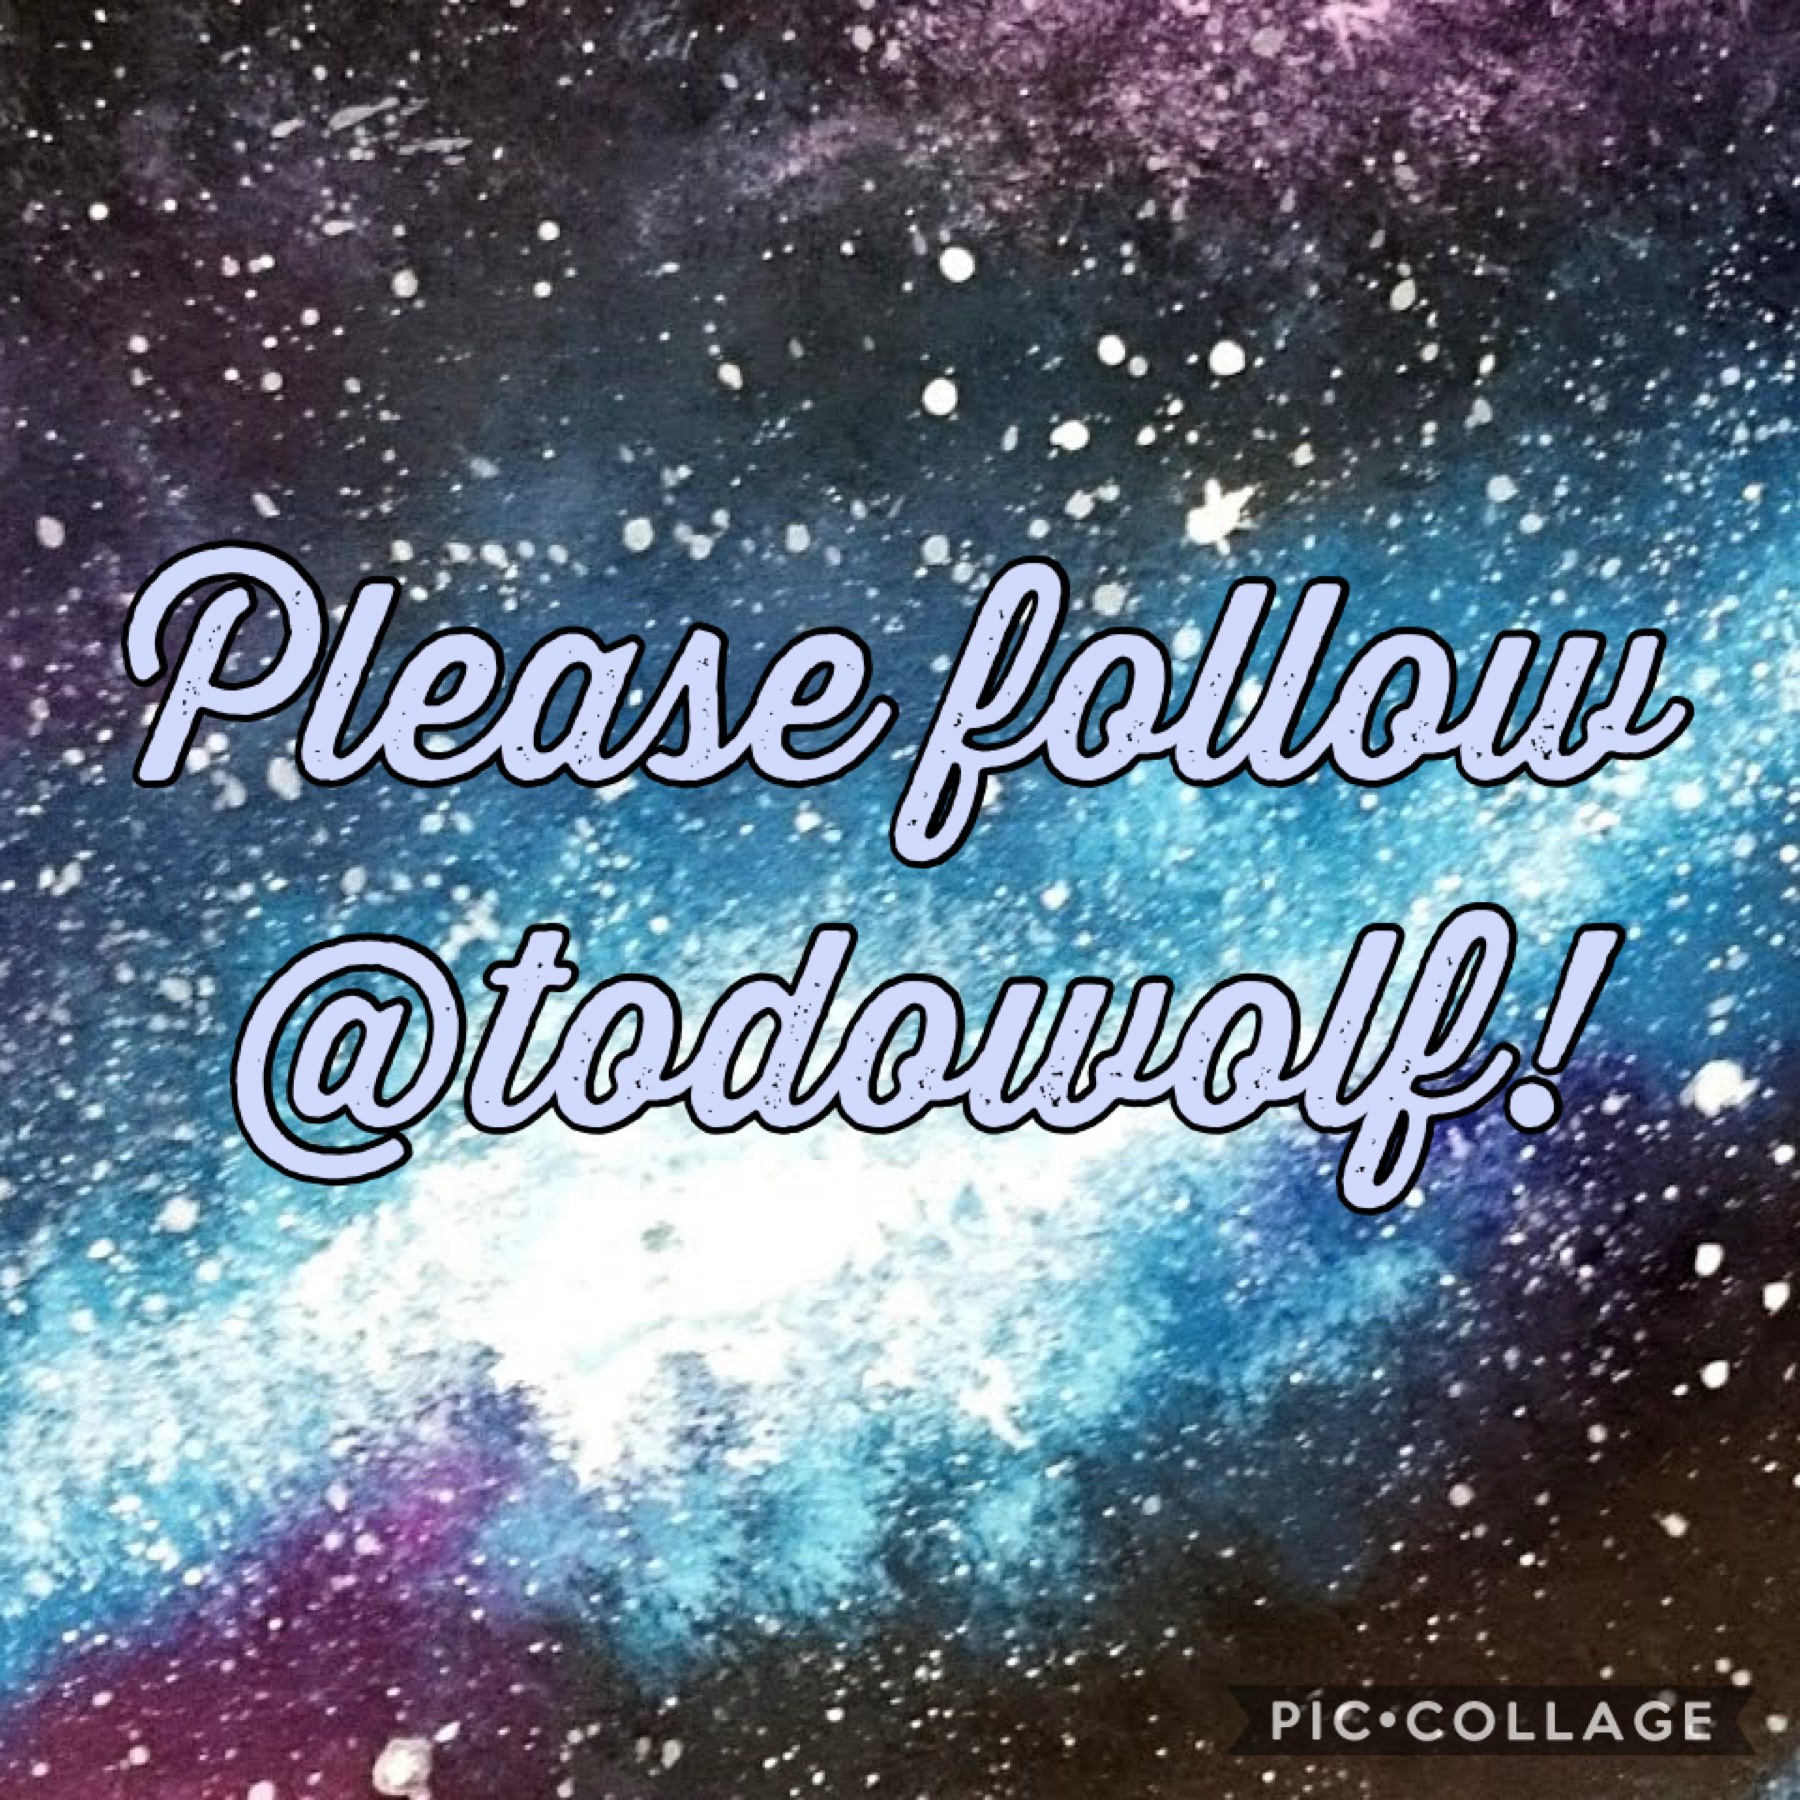 Please follow her